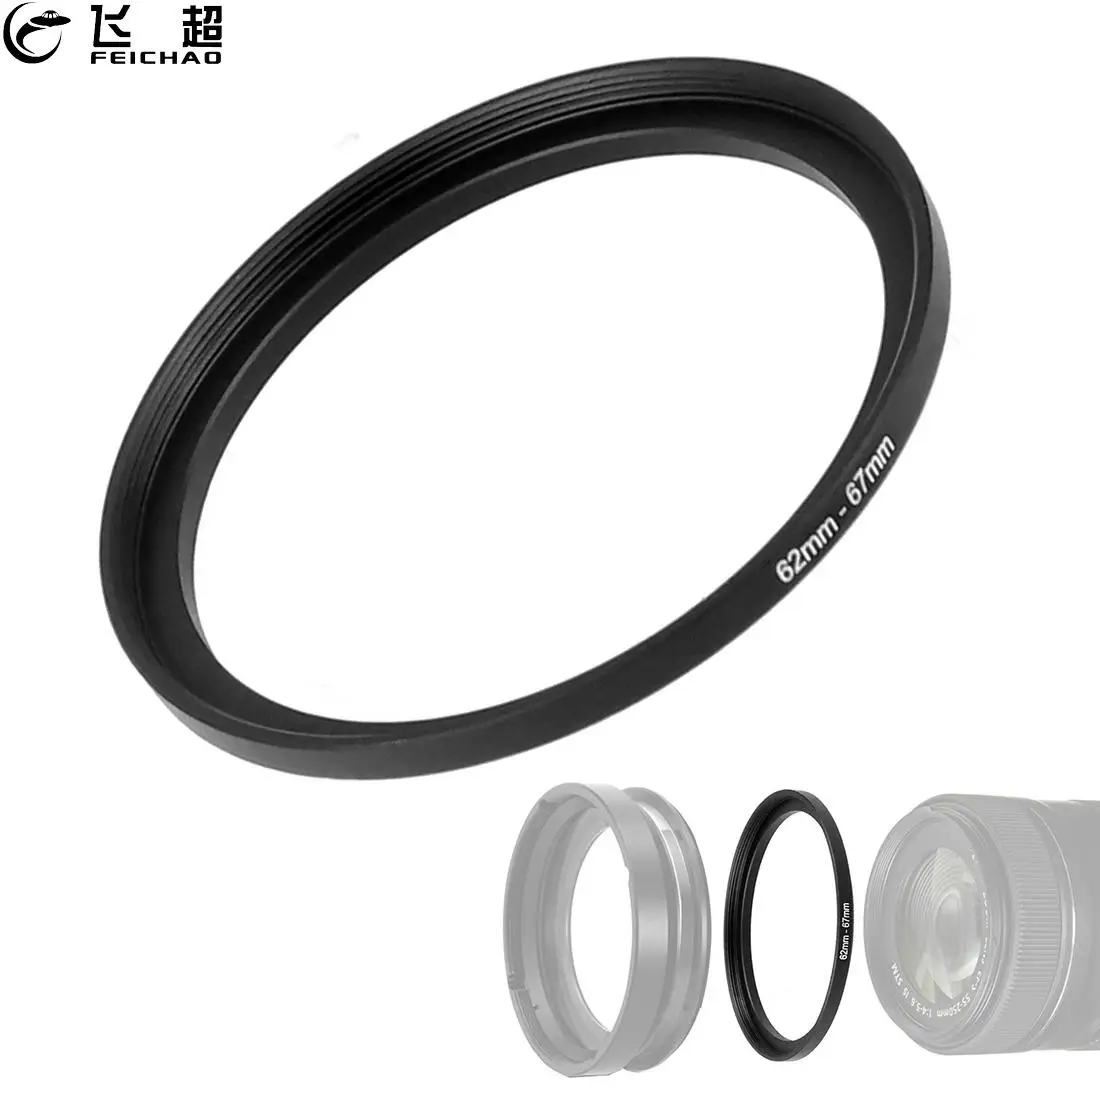 62mm Fujifilm Camera Lens Filter PRF-62 Protector Filter